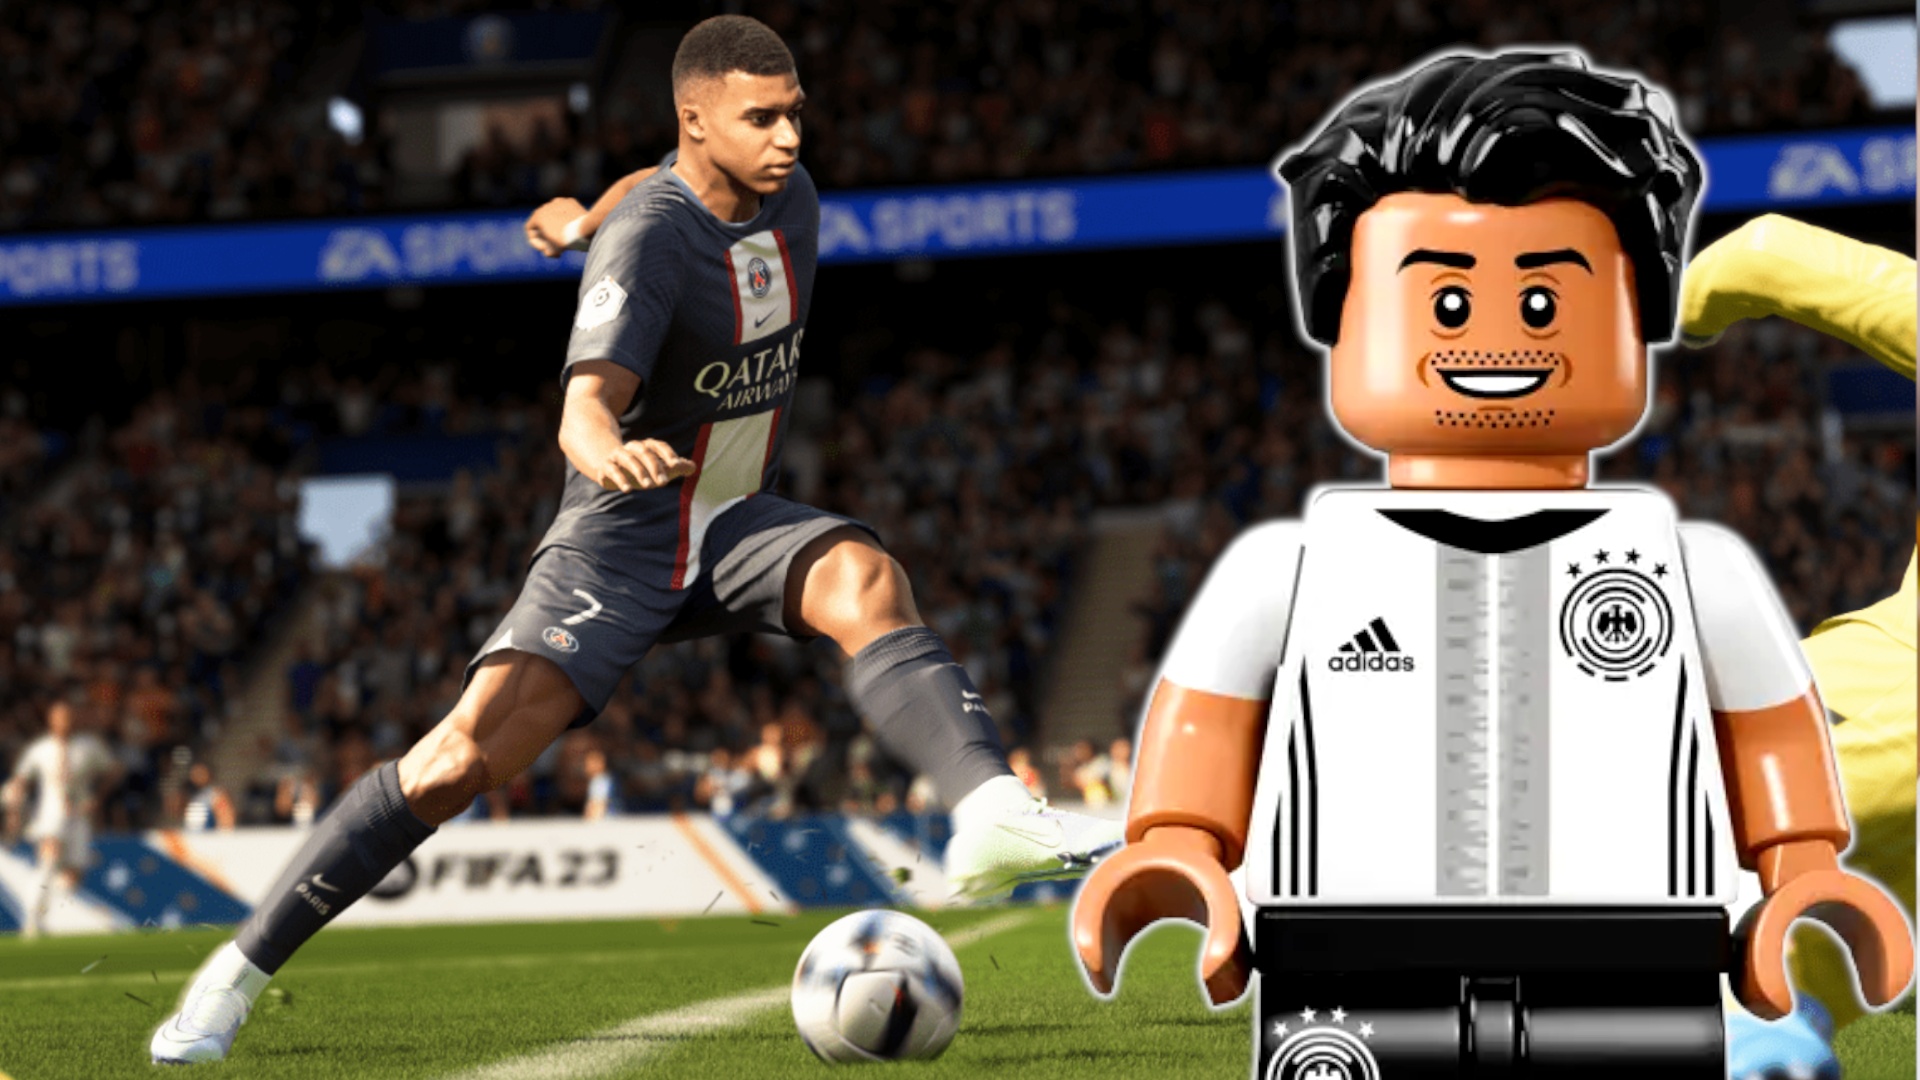 #Macht Lego bald FIFA Konkurrenz? Neues Fußball-Spiel anscheinend geleakt